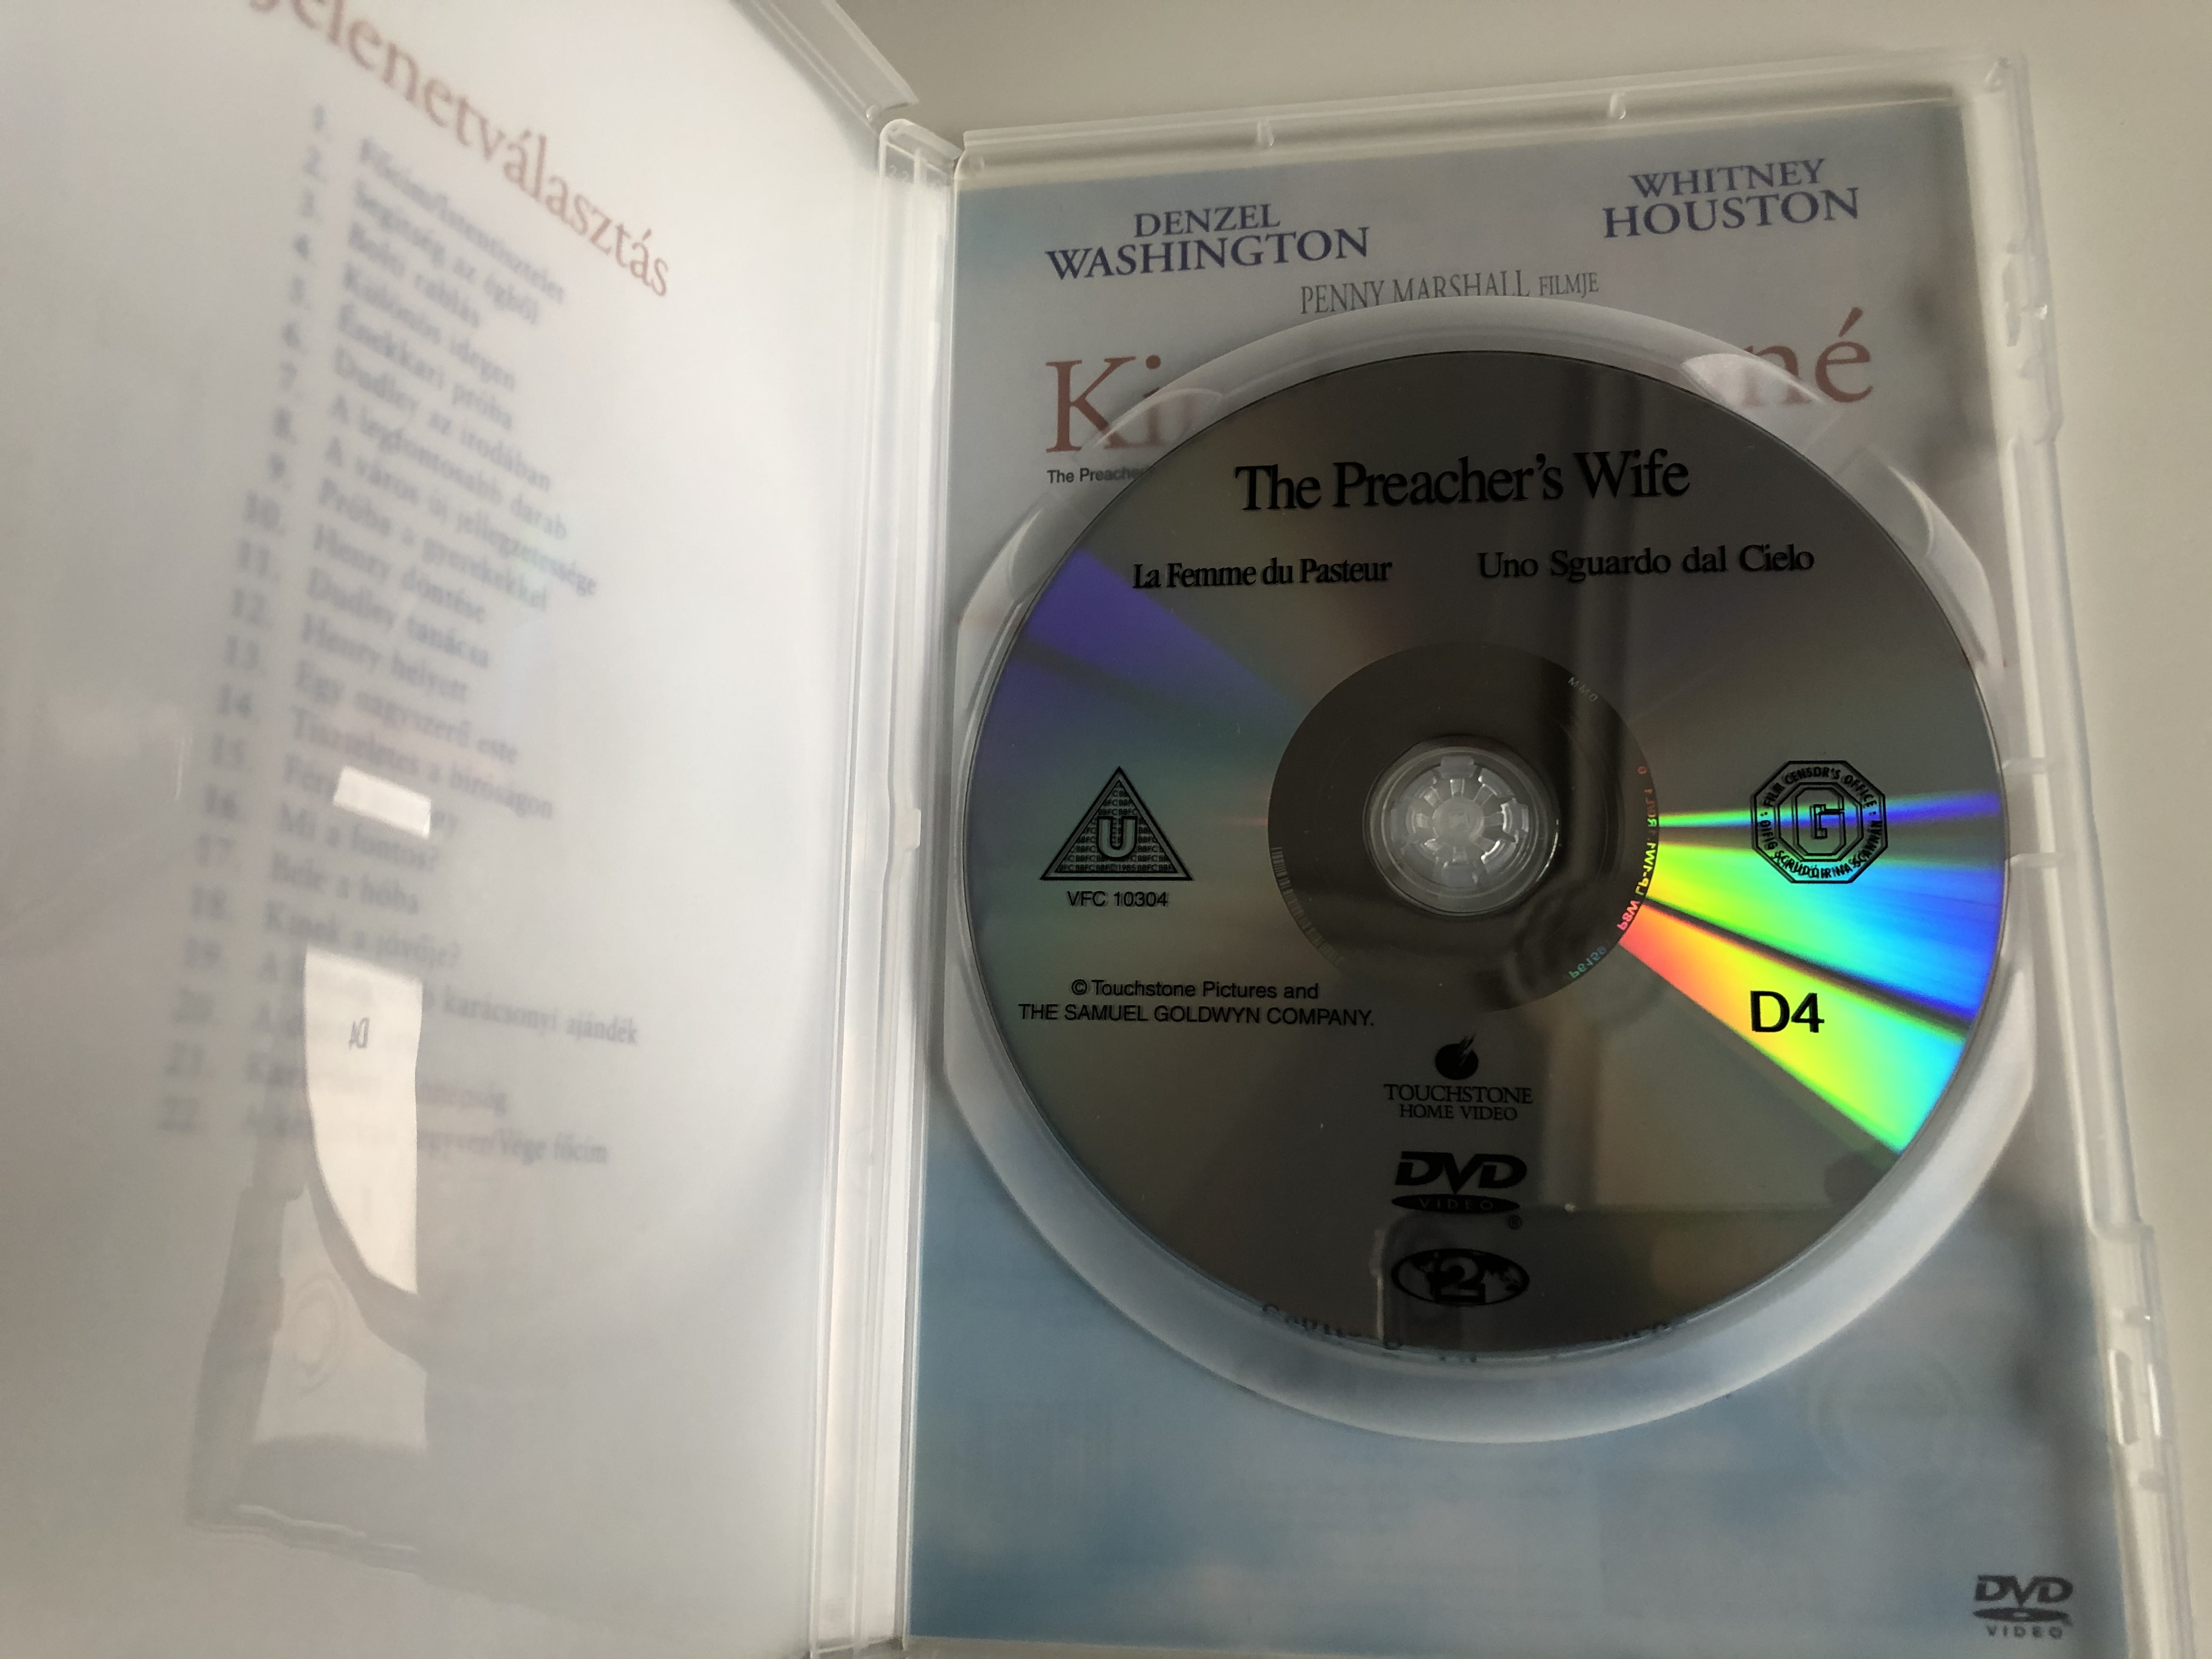 The Preacher's Wife DVD 1996 Kinek a papné 1.JPG